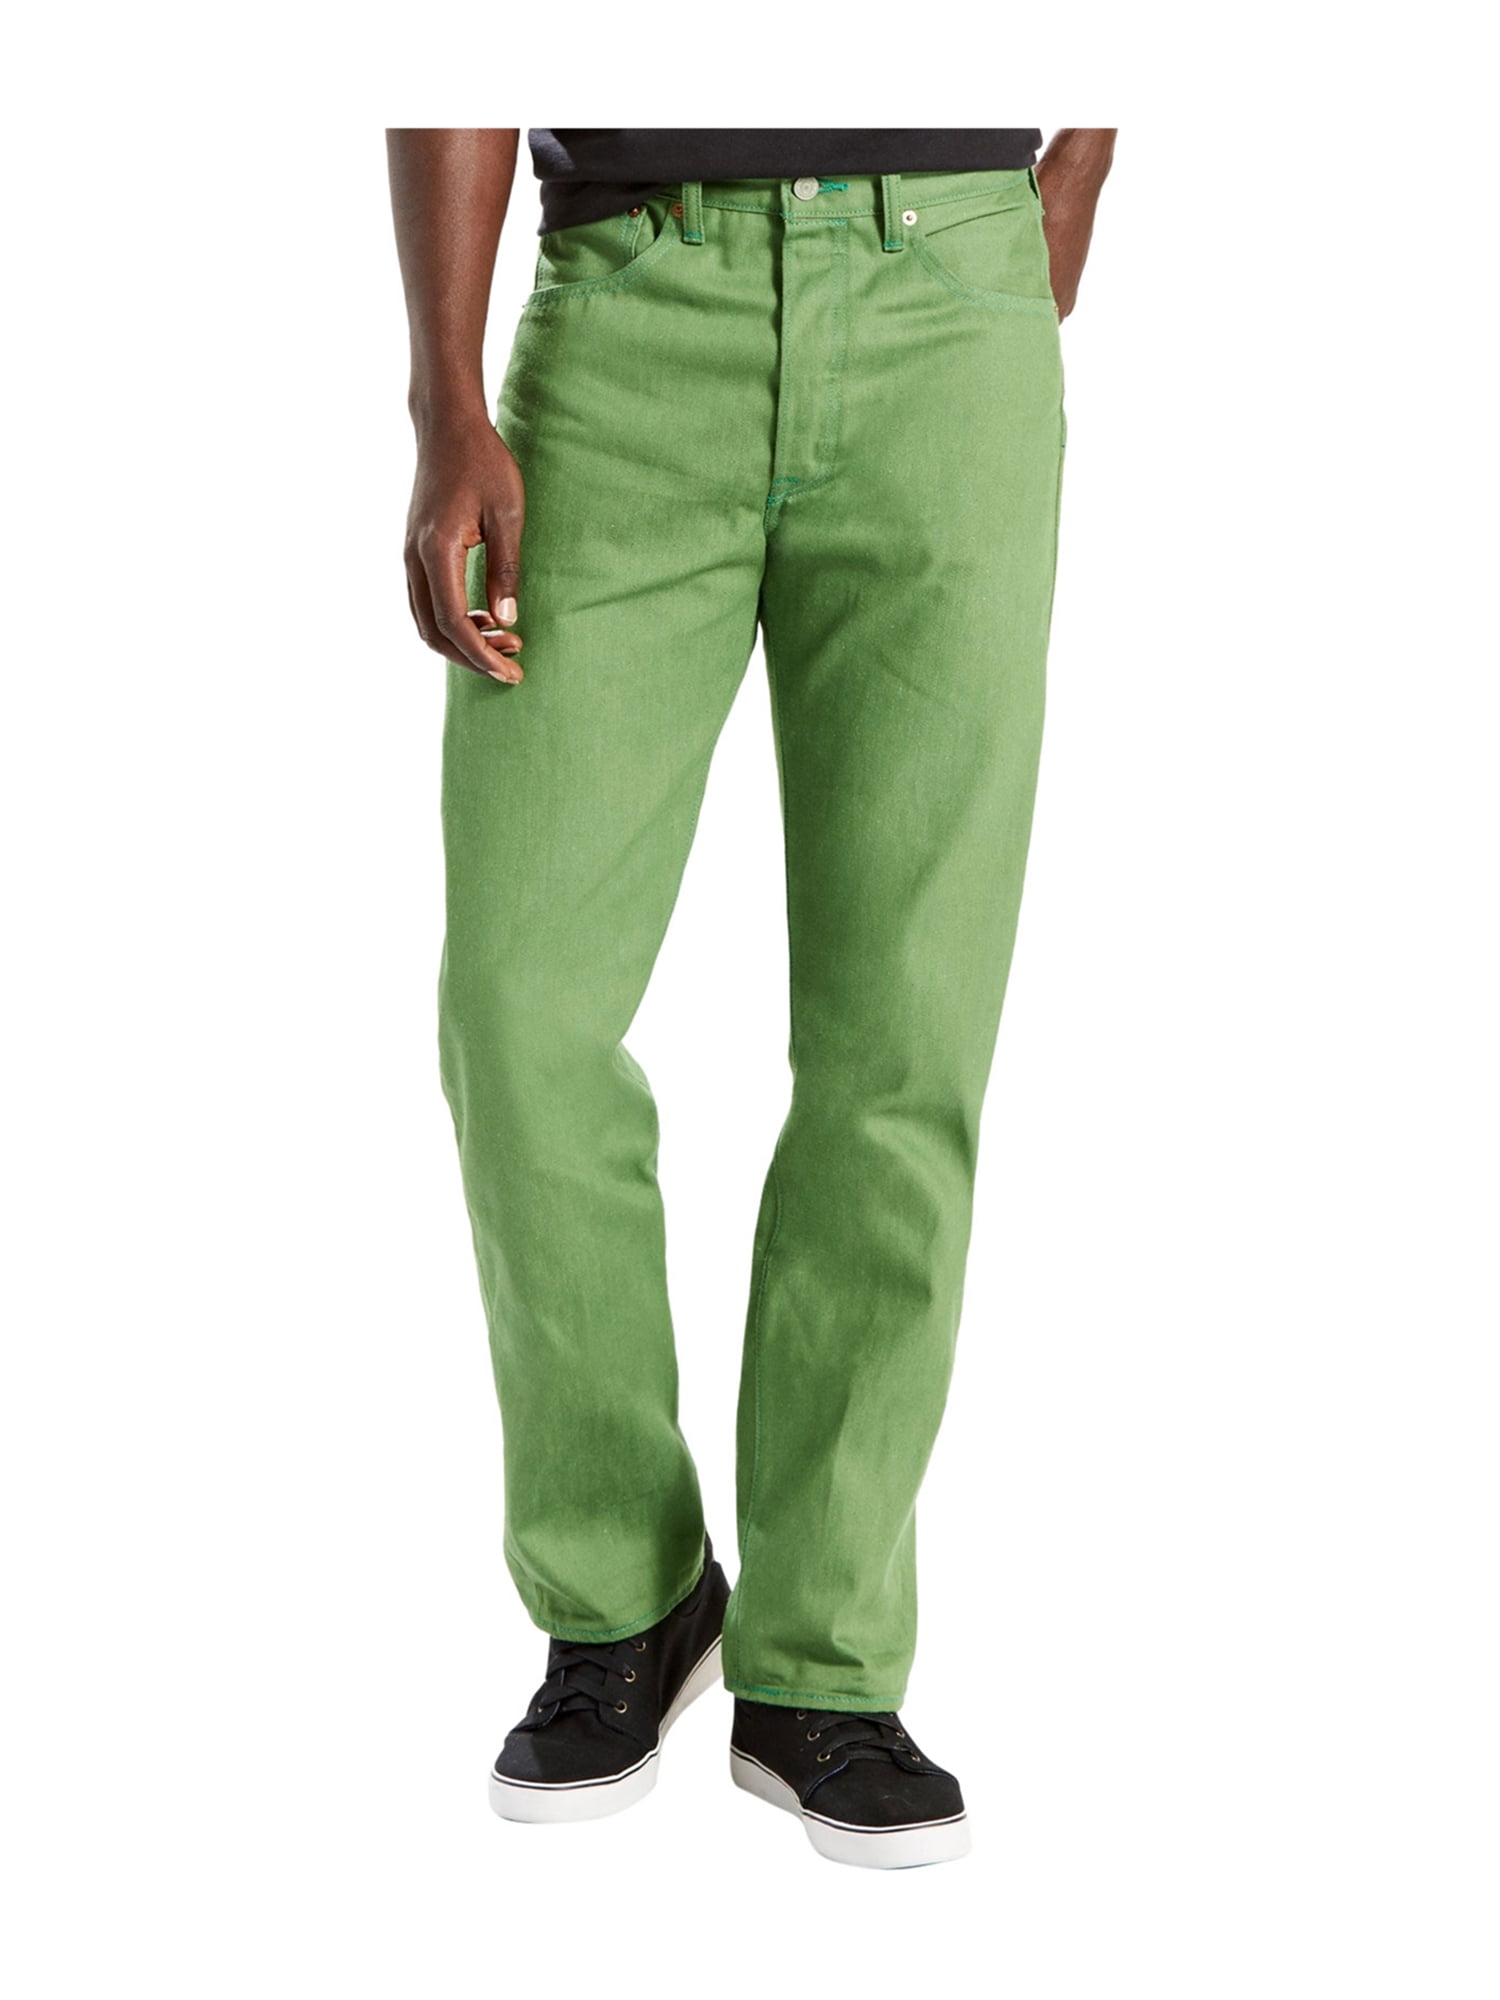 Levi's Mens 501 OG Shrink-to-fit Regular Fit Jeans freshleaf 38x30 ...